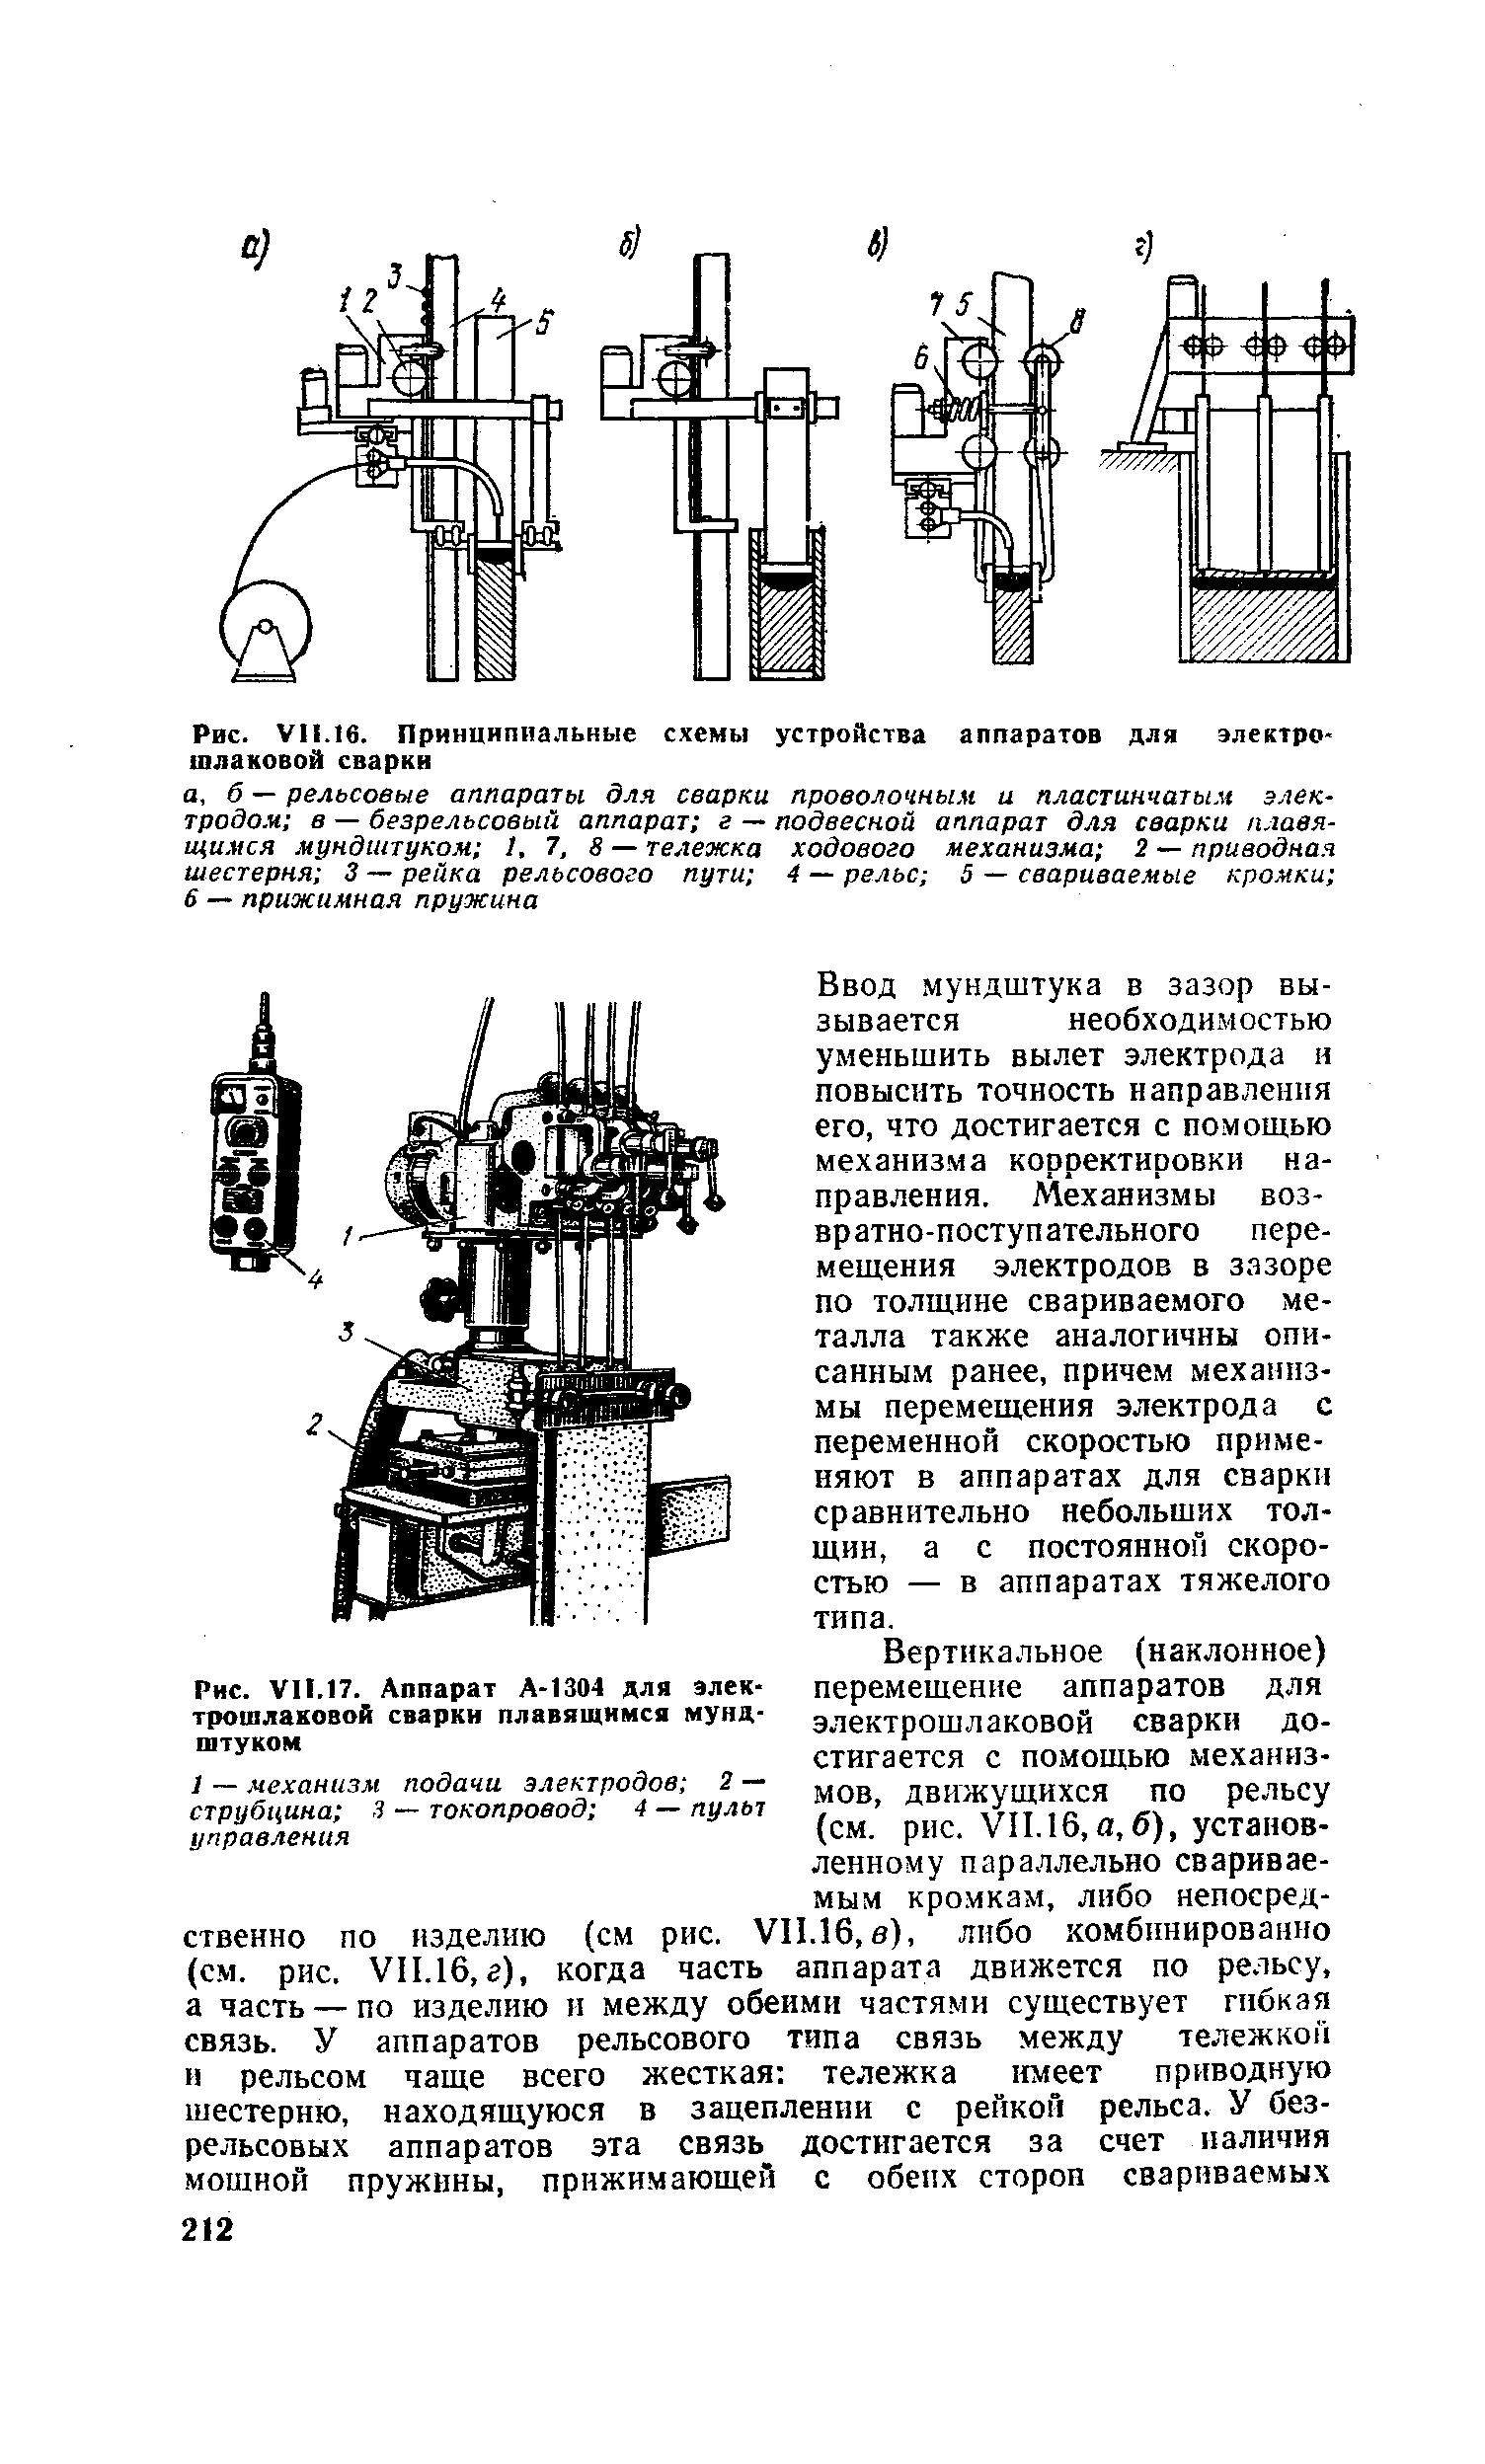 Рис. VII.17. Аппарат А-1304 для электрошлаковой сваркн плавящимся мундштуком
